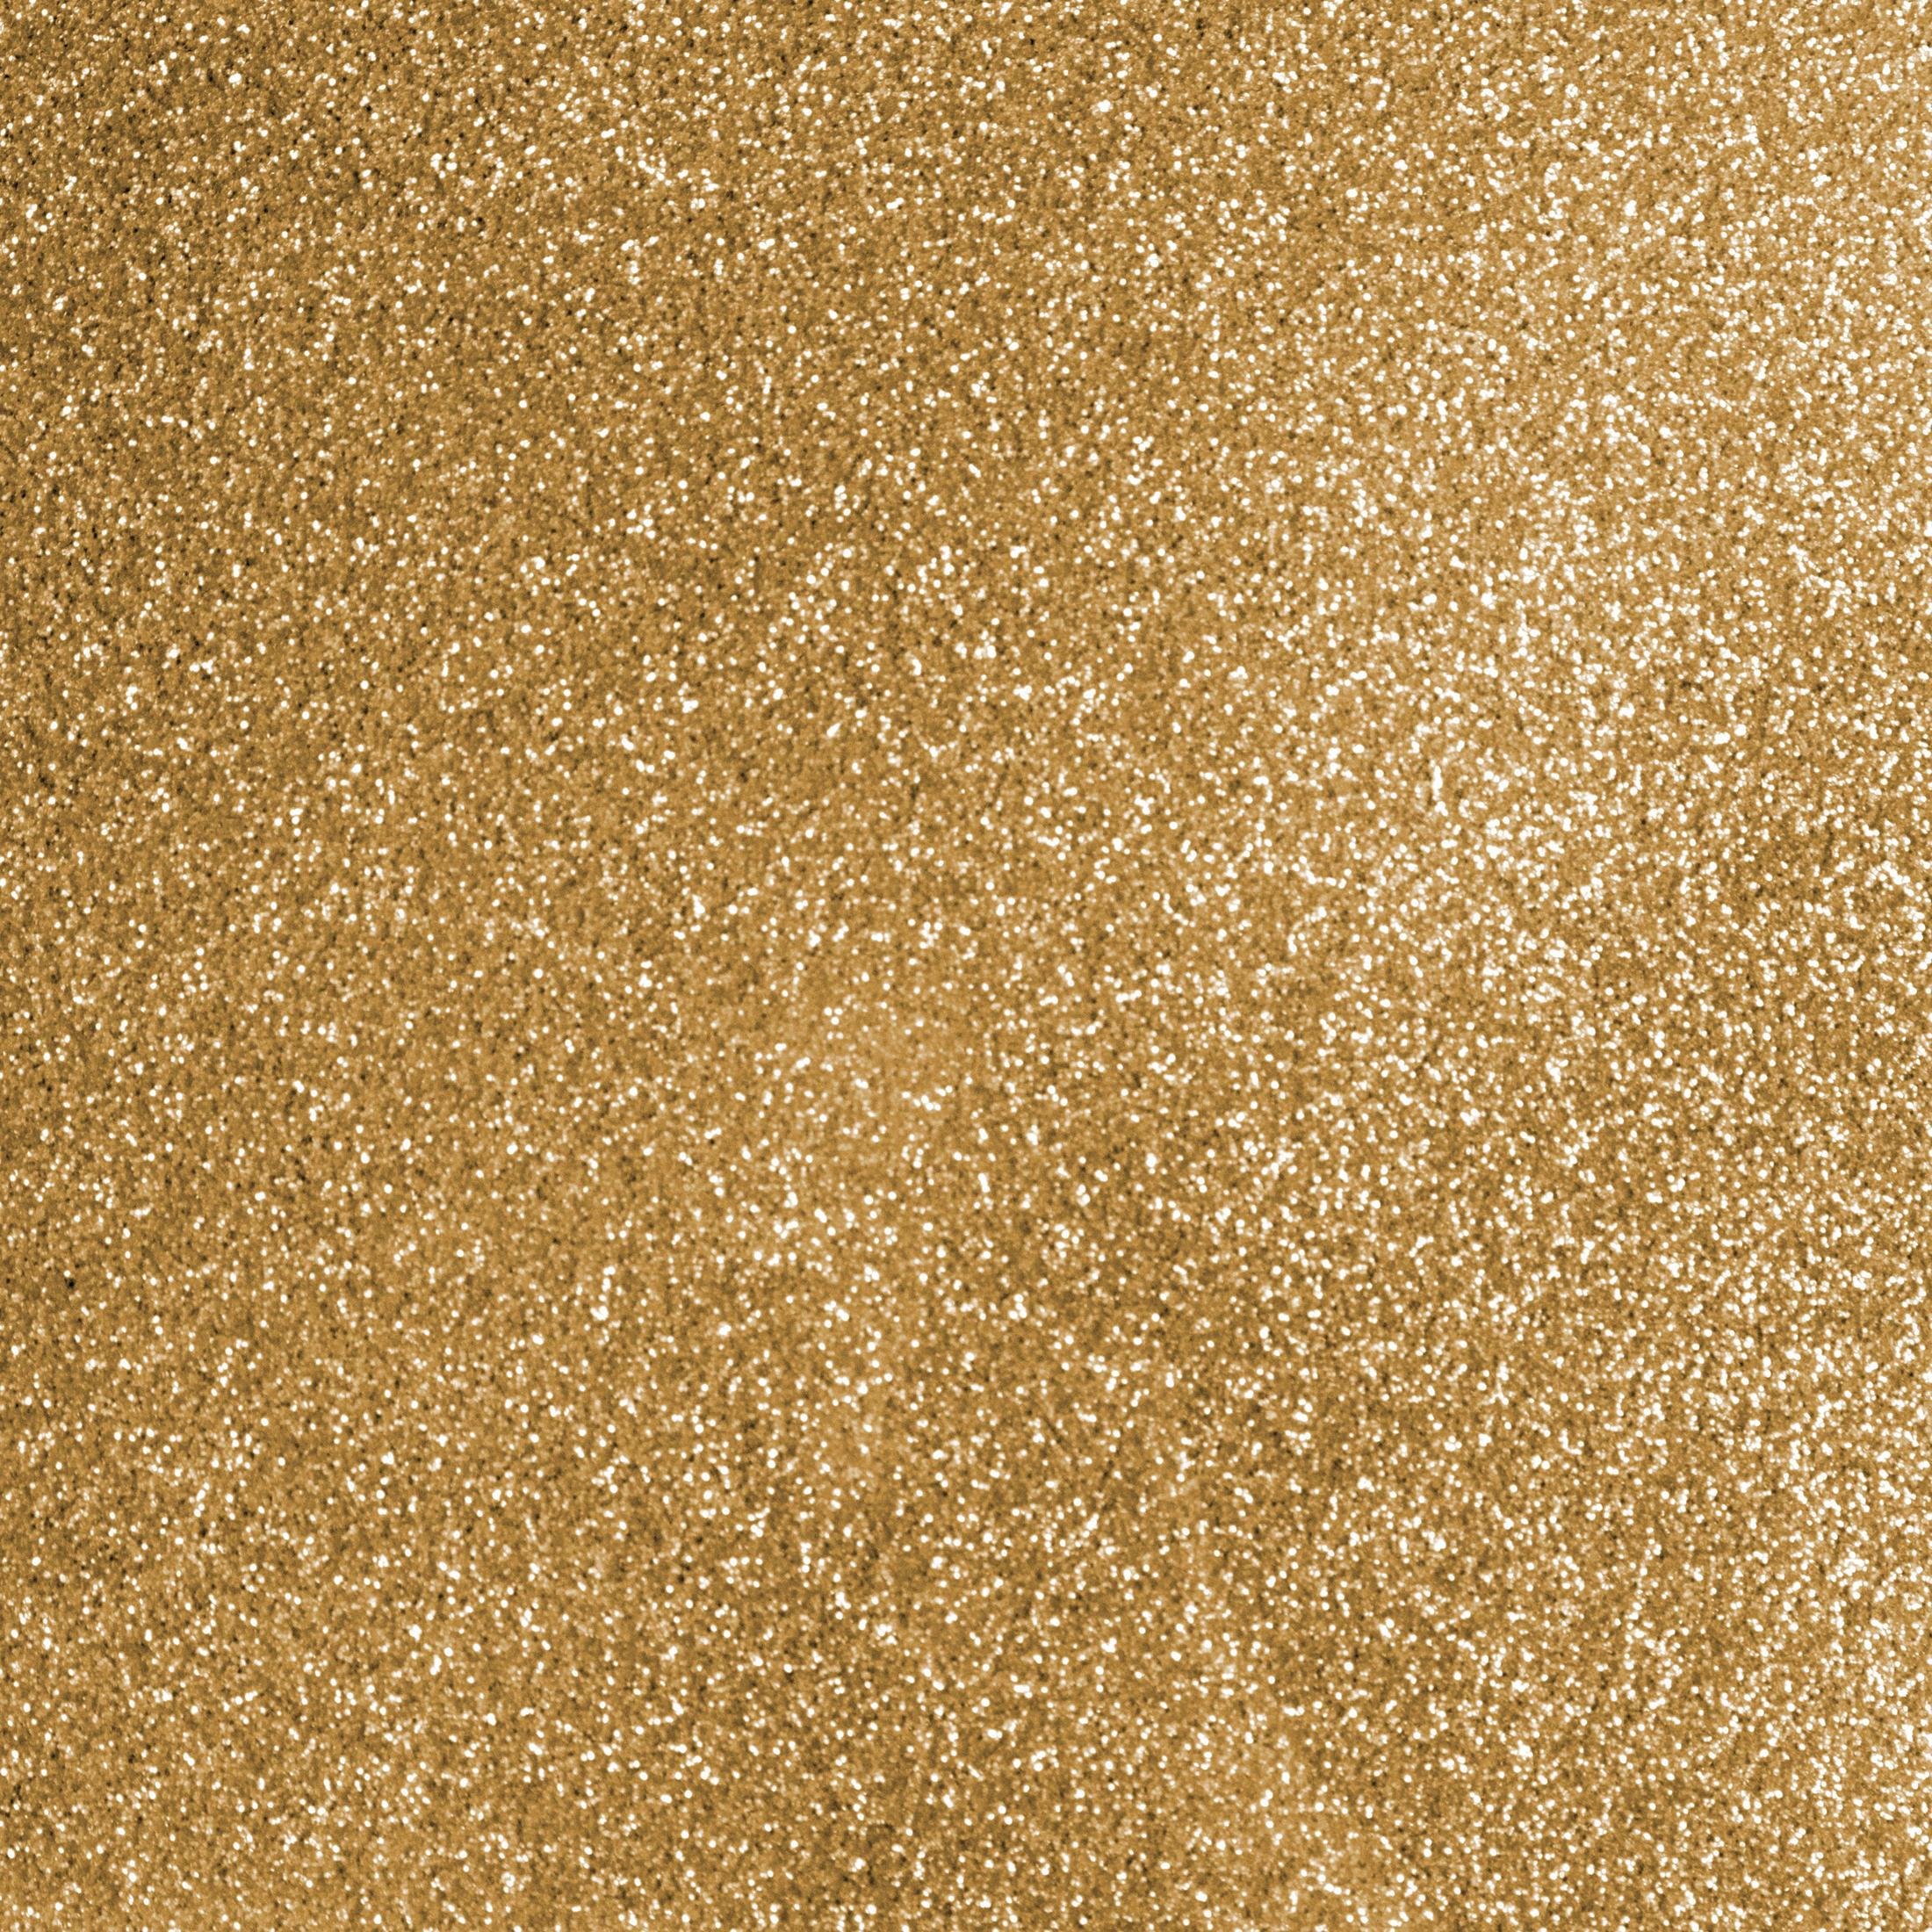 Gold Glitter SIO 1 GOLD 2008673 GLITTER SHEET Bügelfolie CRICUT